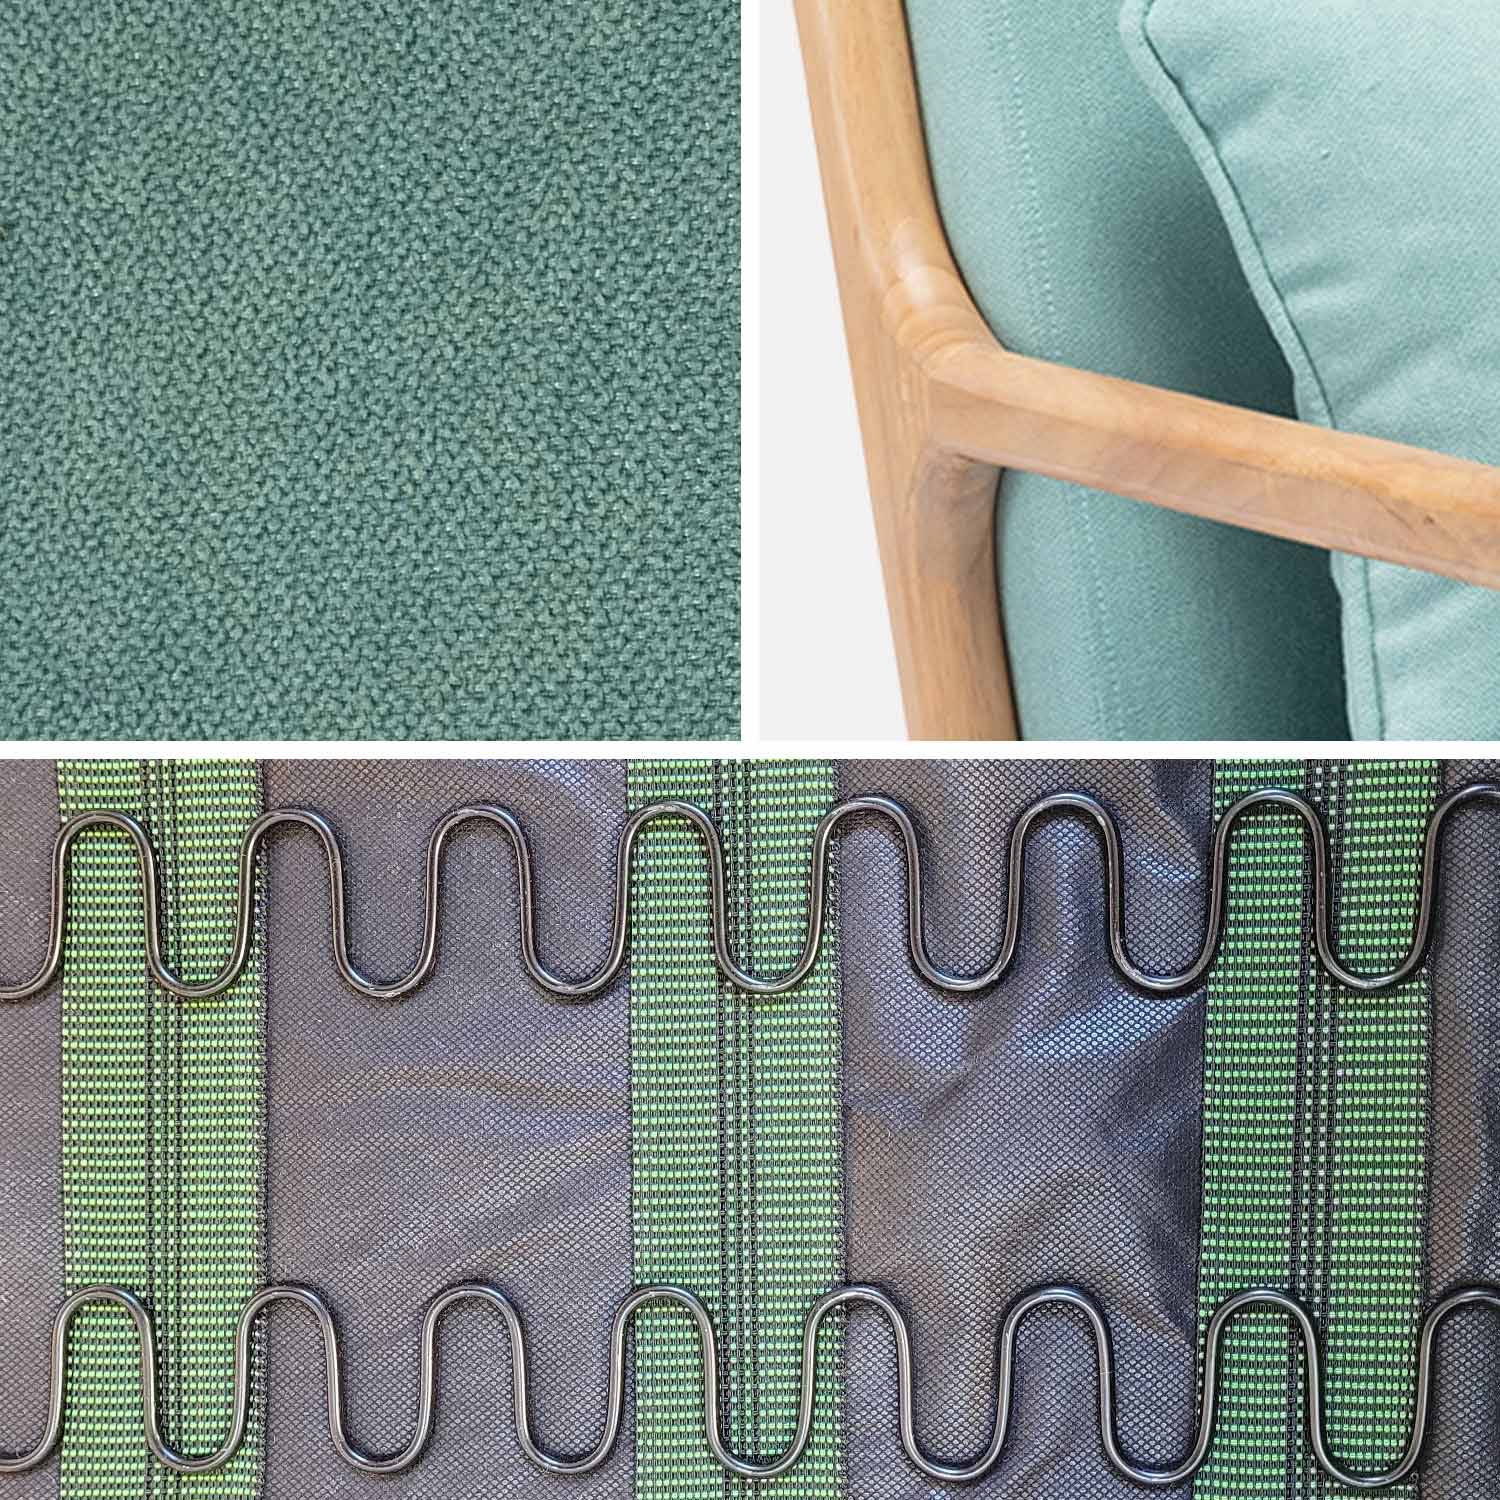 Cadeira de baloiço de design em madeira e tecido, 1 lugar, cadeira de baloiço escandinava, verde água Photo4